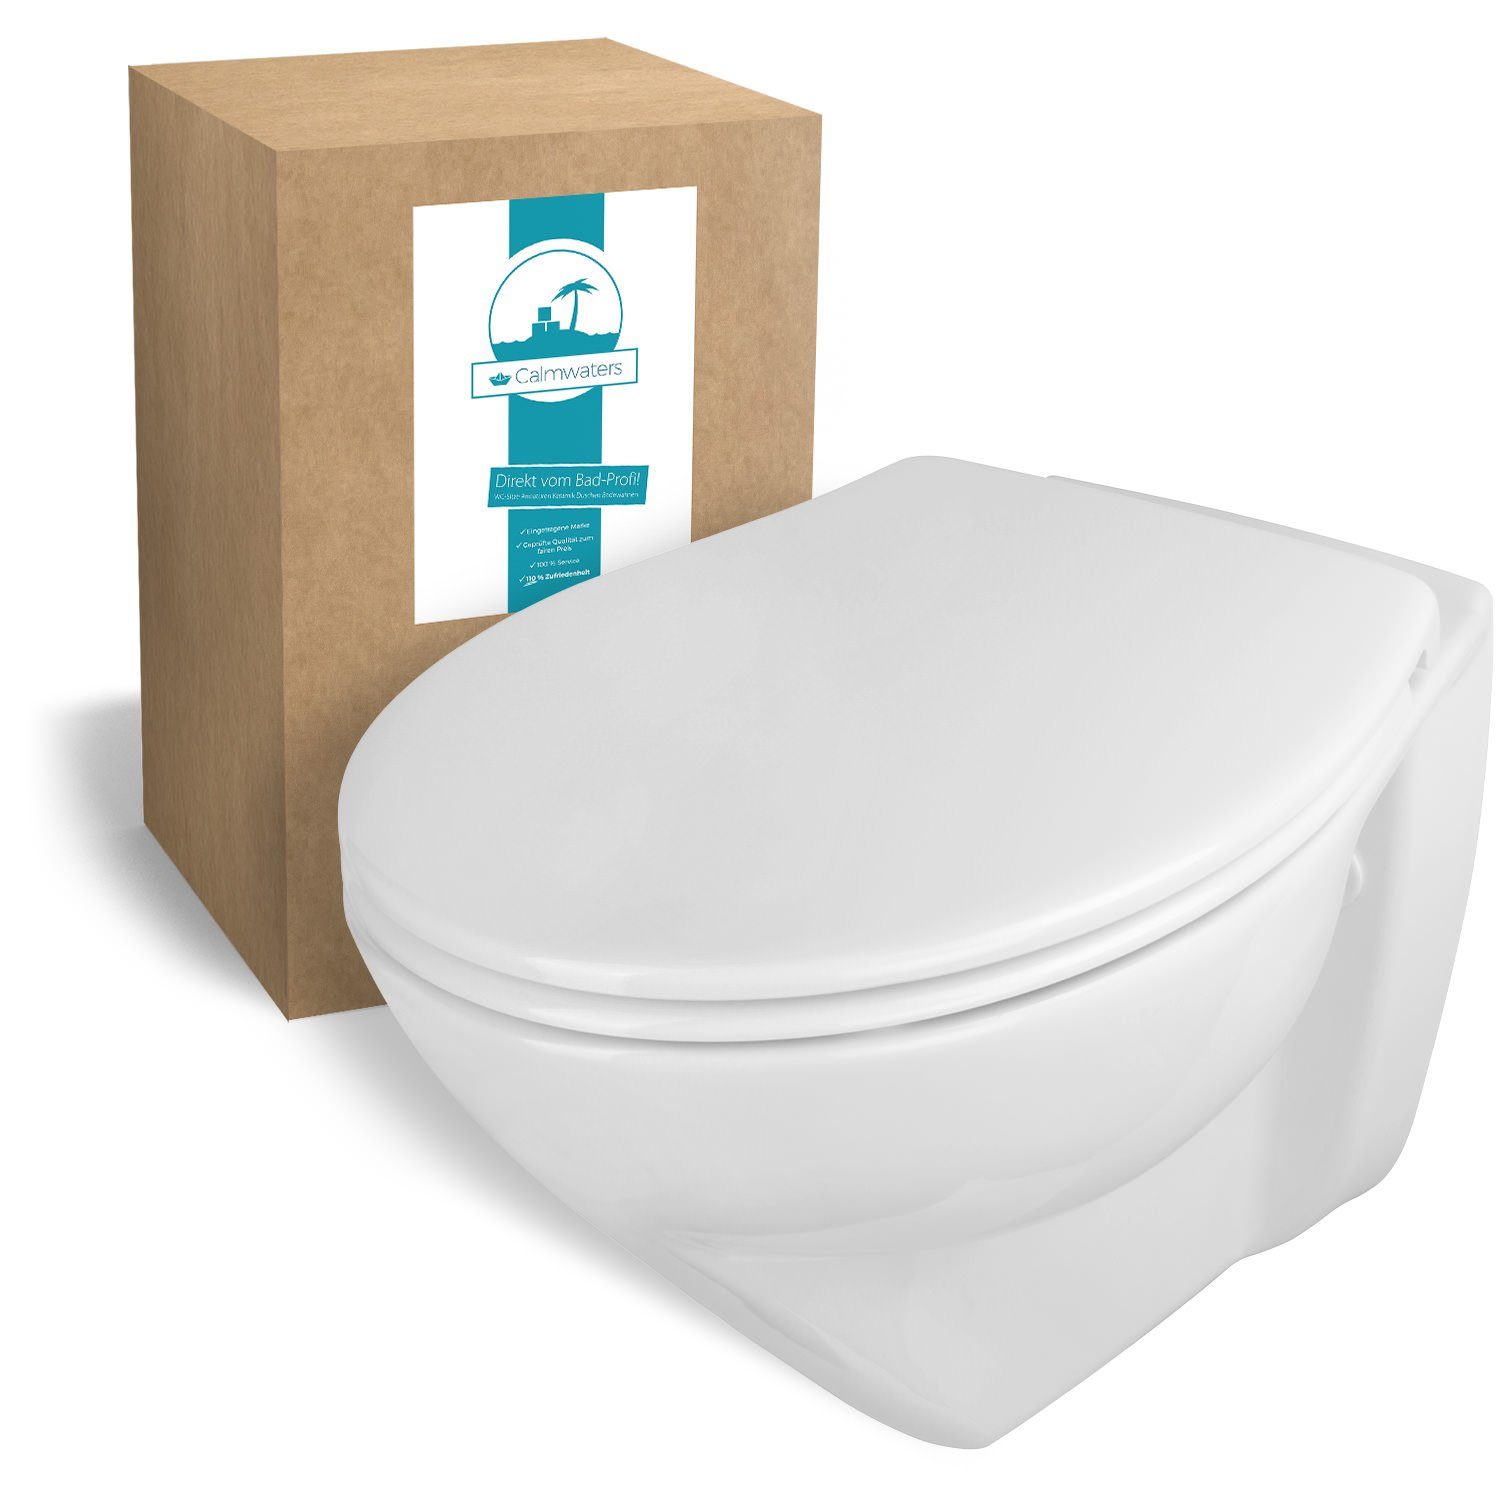 Calmwaters Tiefspül-WC, Wandhängend, Abgang Waagerecht, Wand-WC,  spülrandlos, 6 cm erhöht, WC-Sitz mit Absenkautomatik